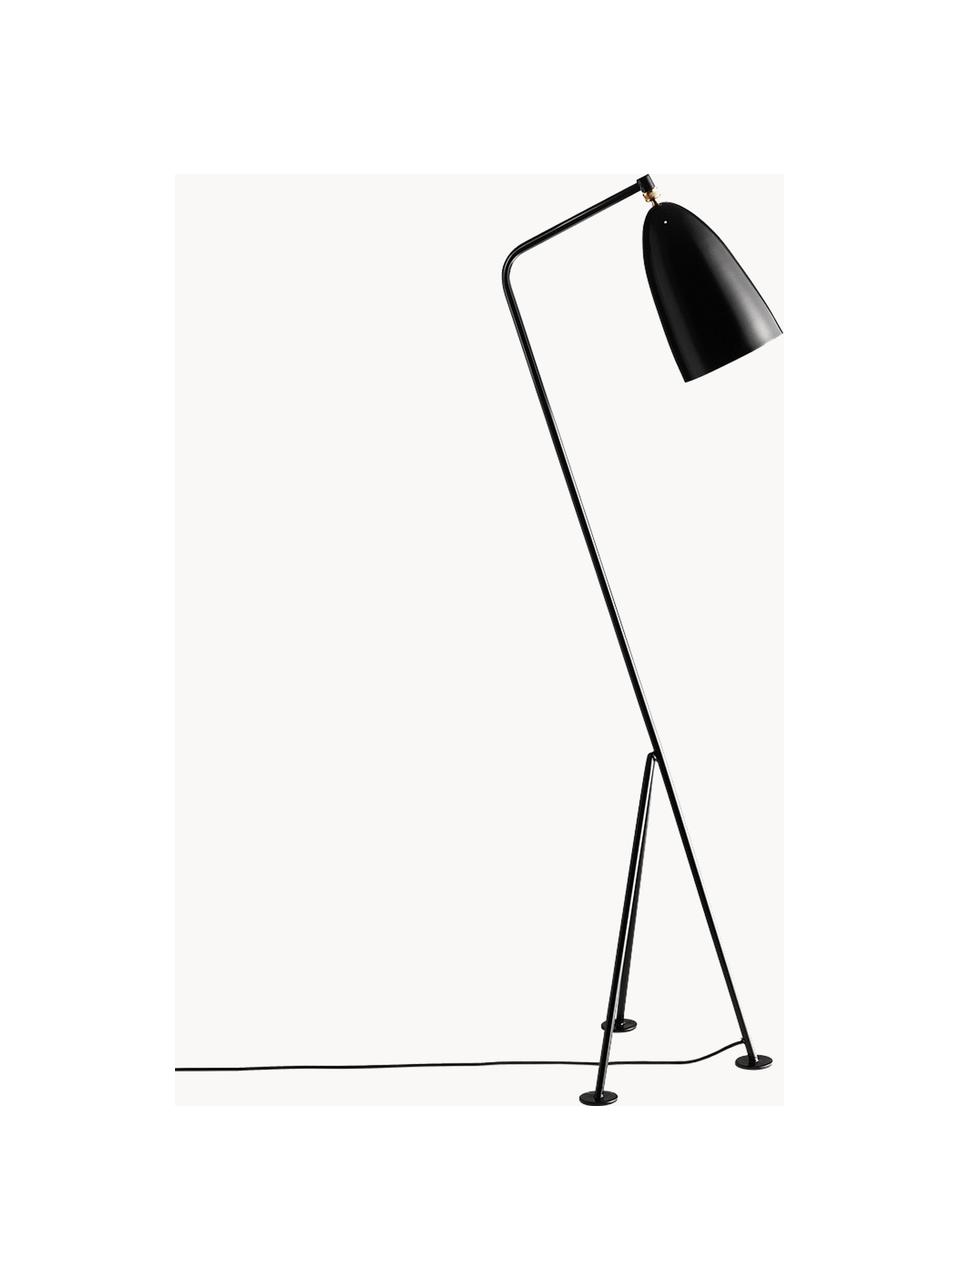 Lampa podłogowa Gräshoppa, Czarny, mosiężny, W 125 cm